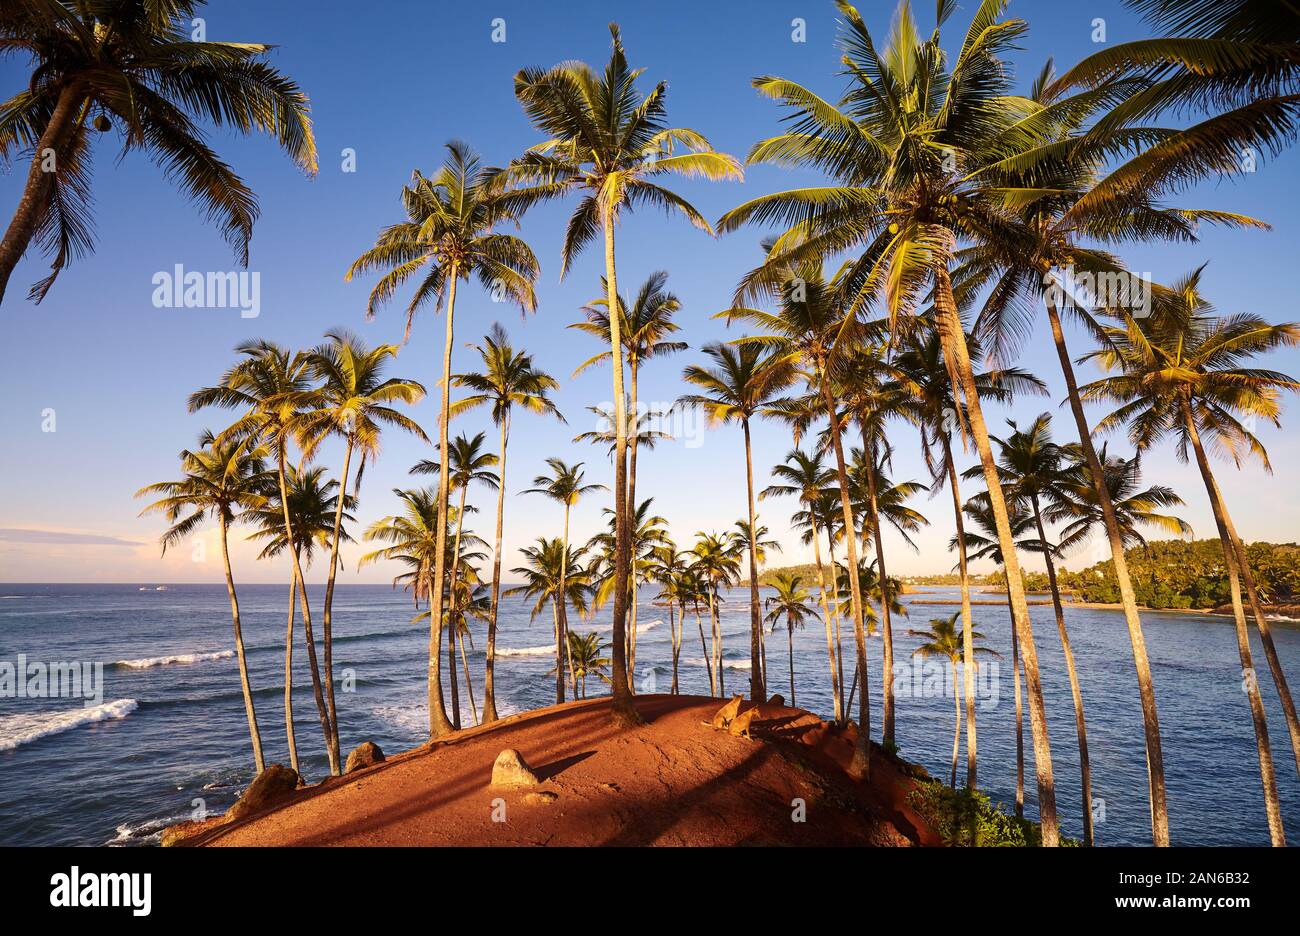 Coconut palm trees on a tropical island at sunrise, Sri Lanka. Stock Photo